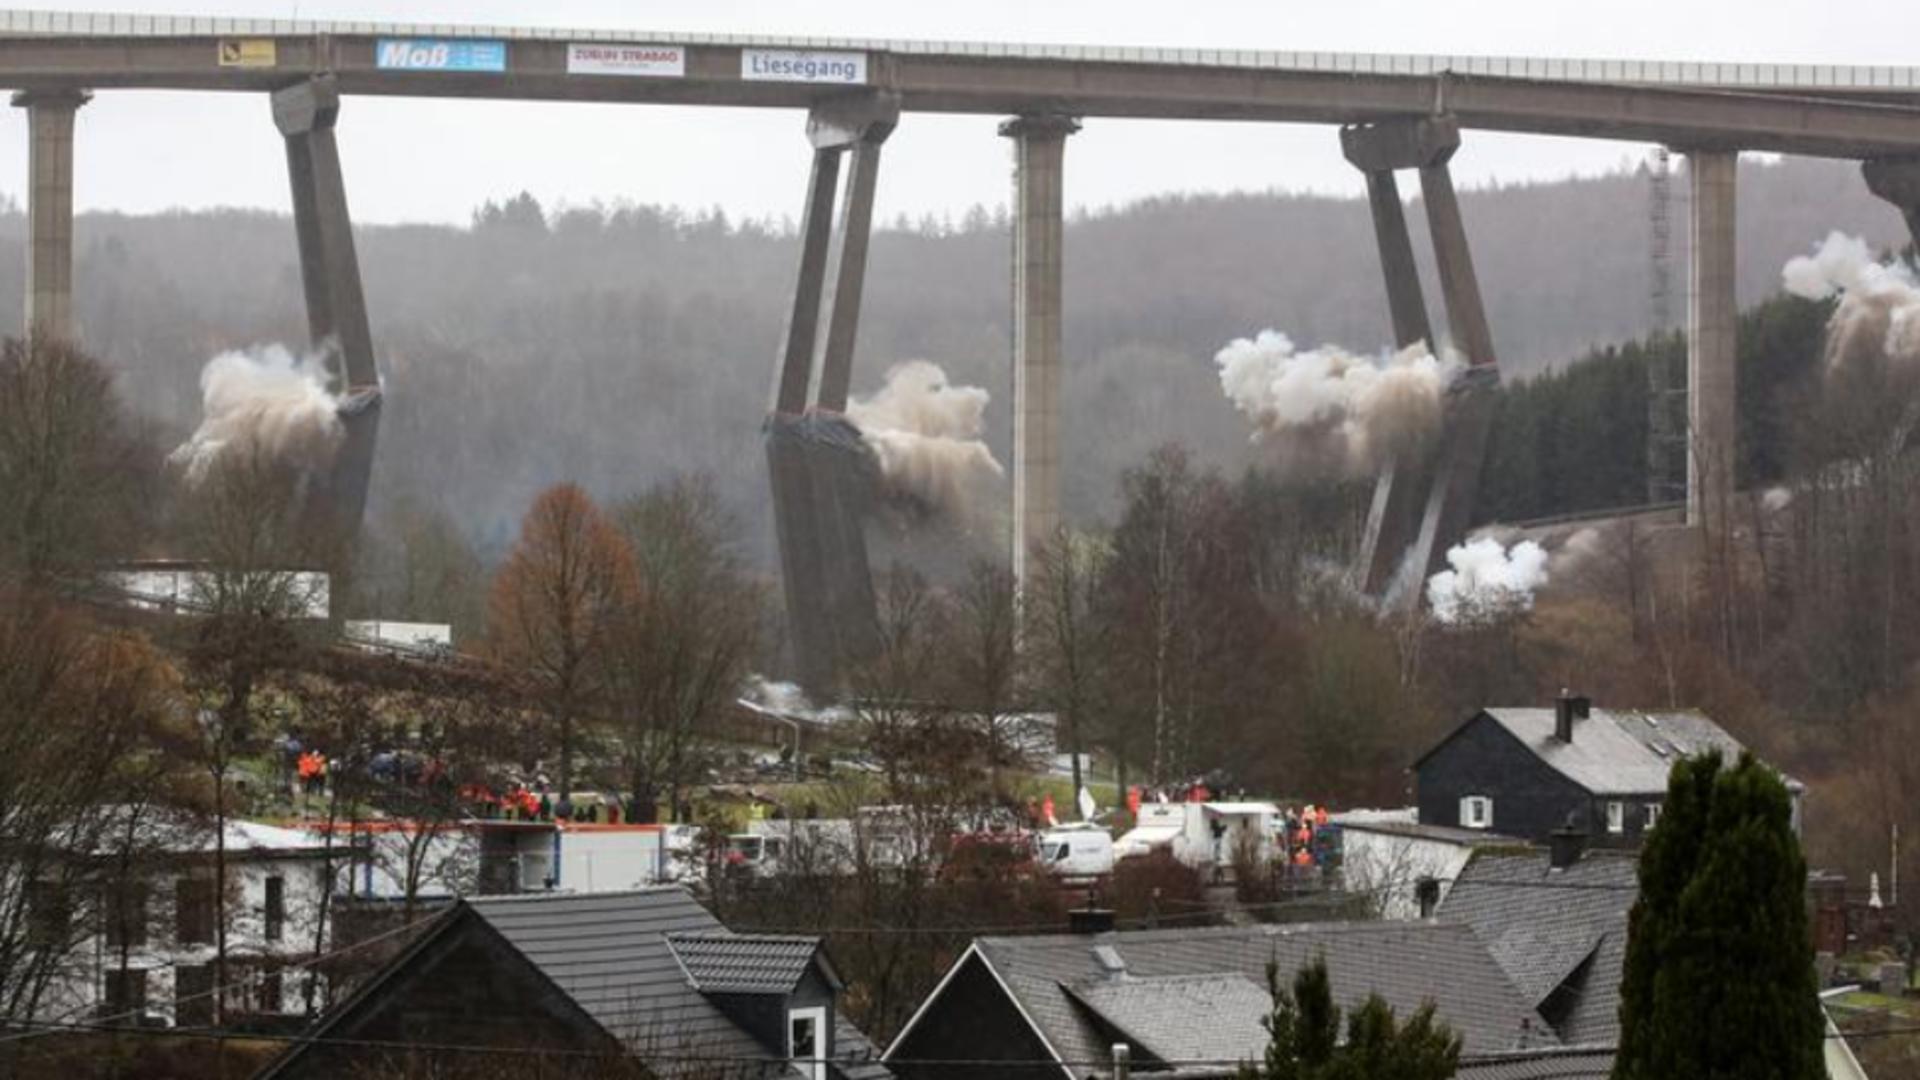 Imagini fabuloase din Germania - POD, aruncat în aer cu 120 de kilograme de explozibil